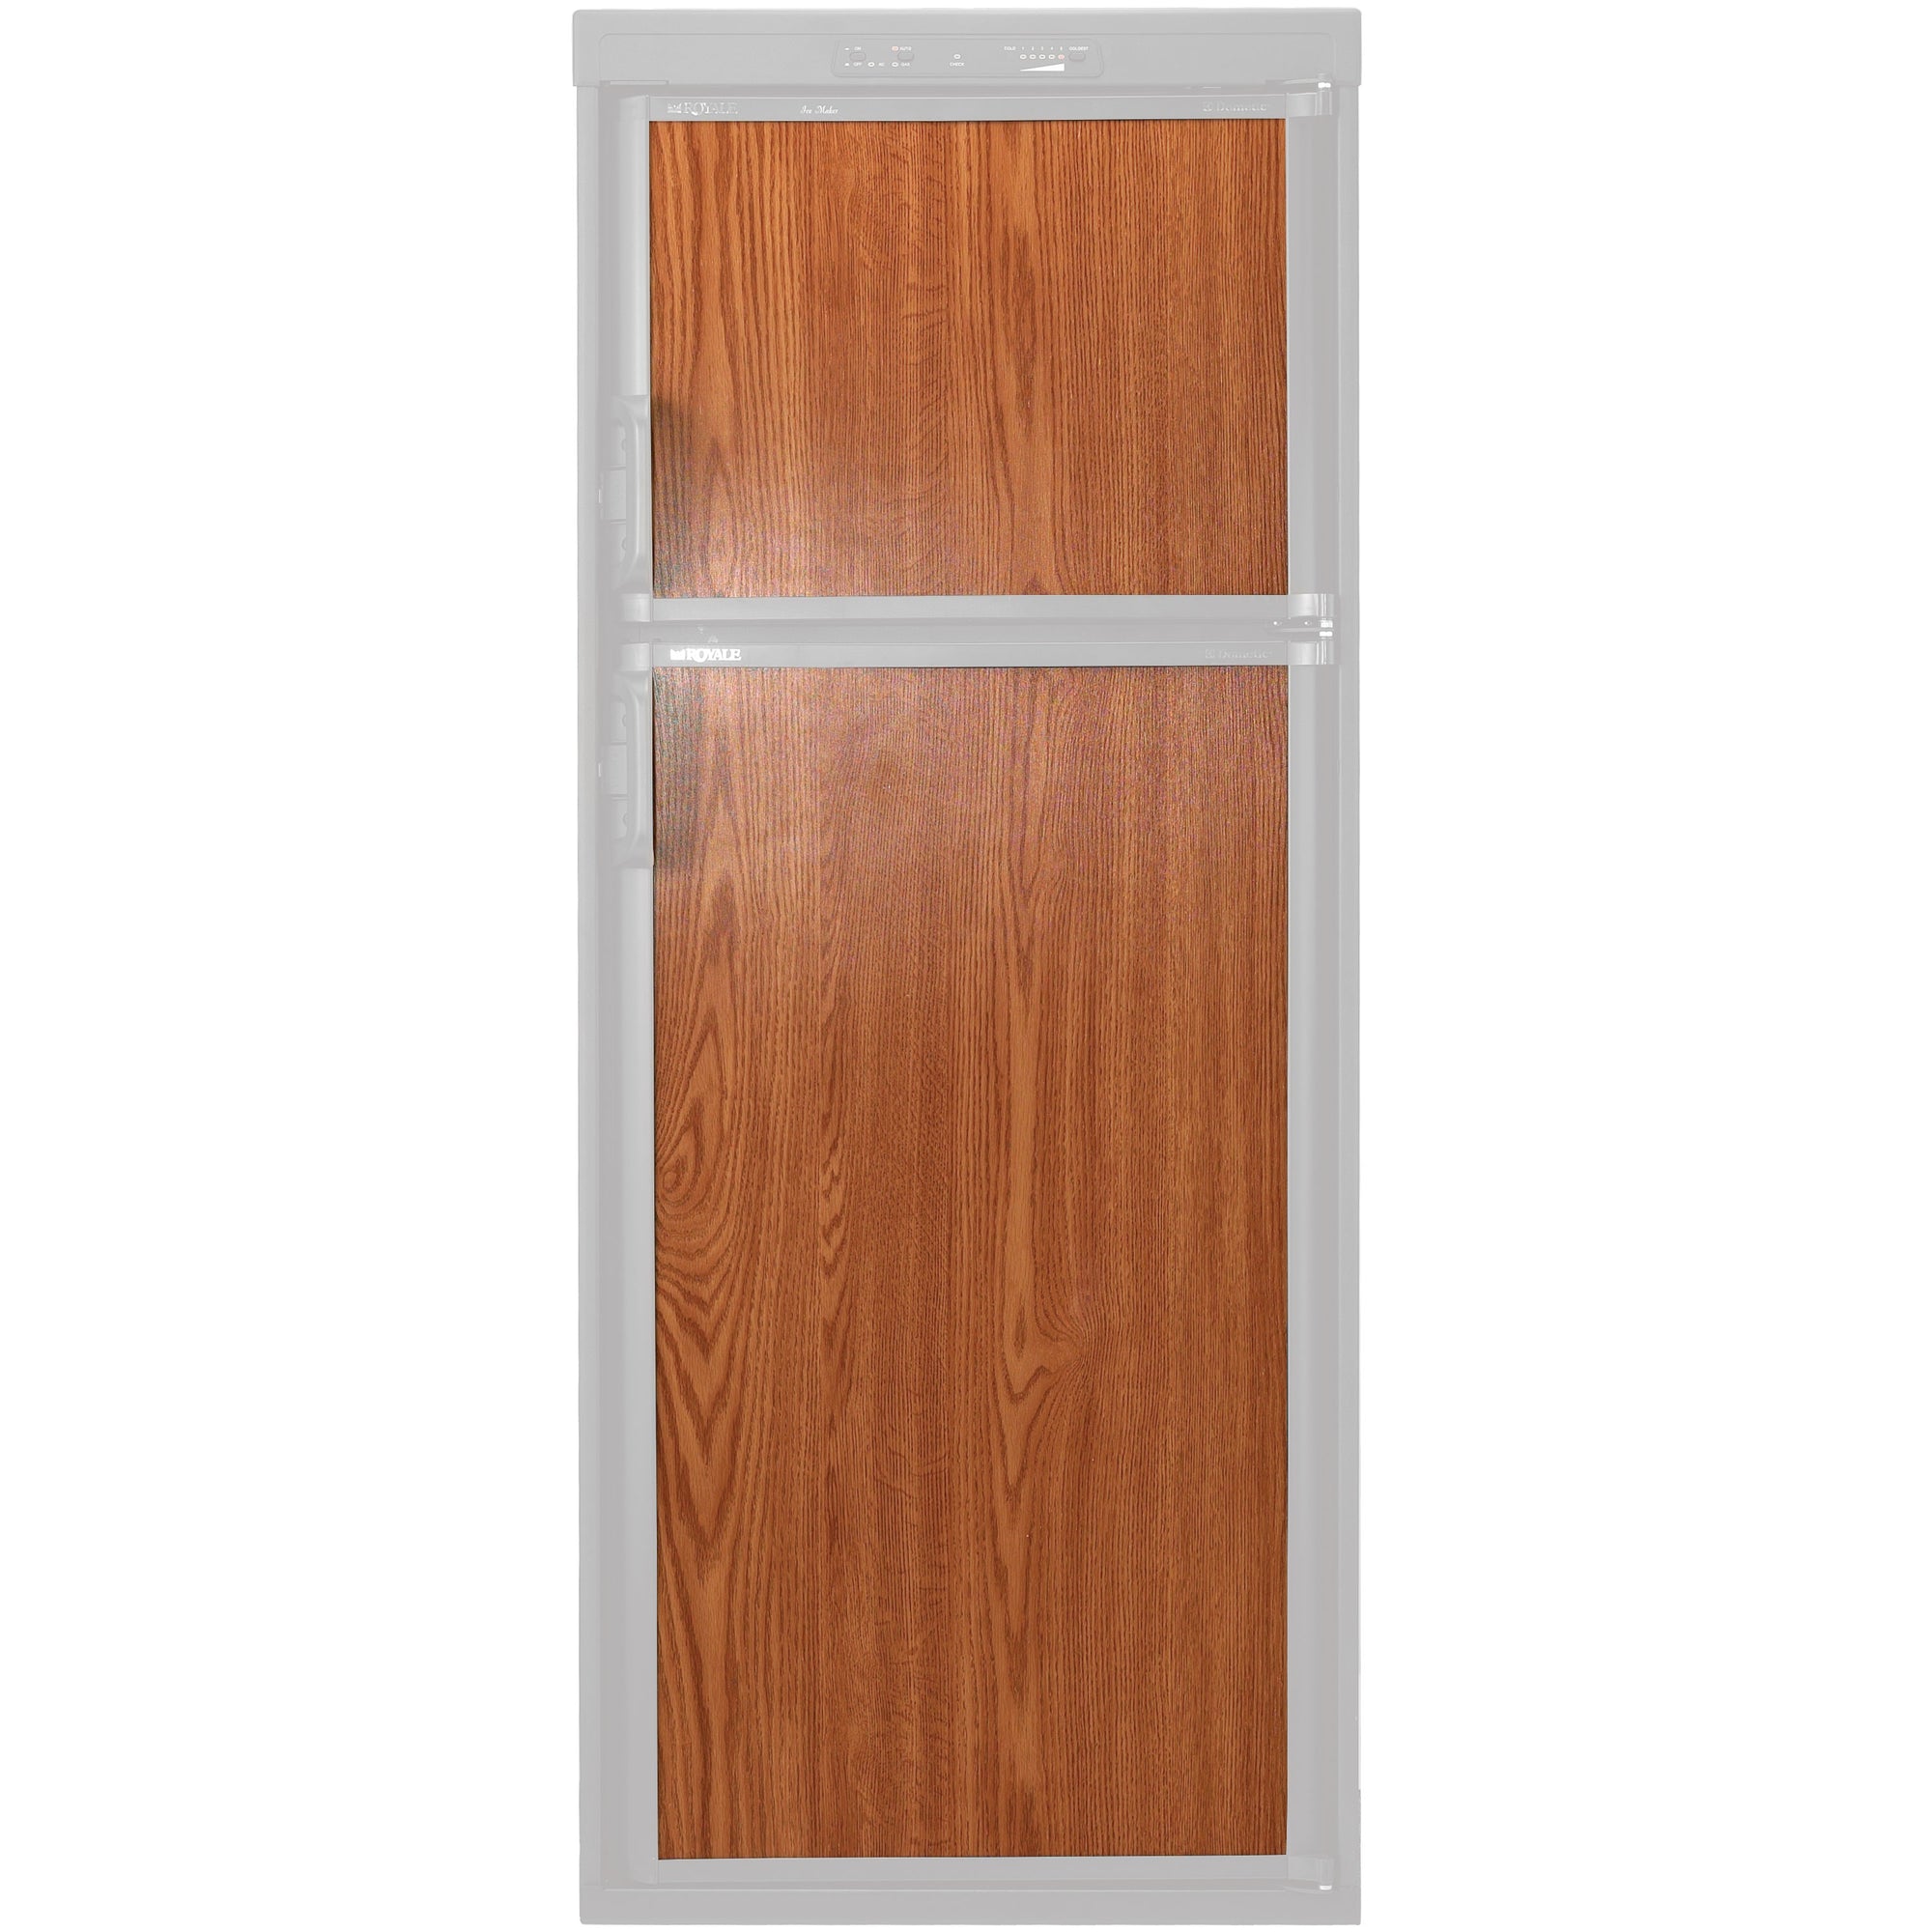 Dometic 3106863.156B Refrigerator Door Panel - Wood Grain, Both Panels 3762